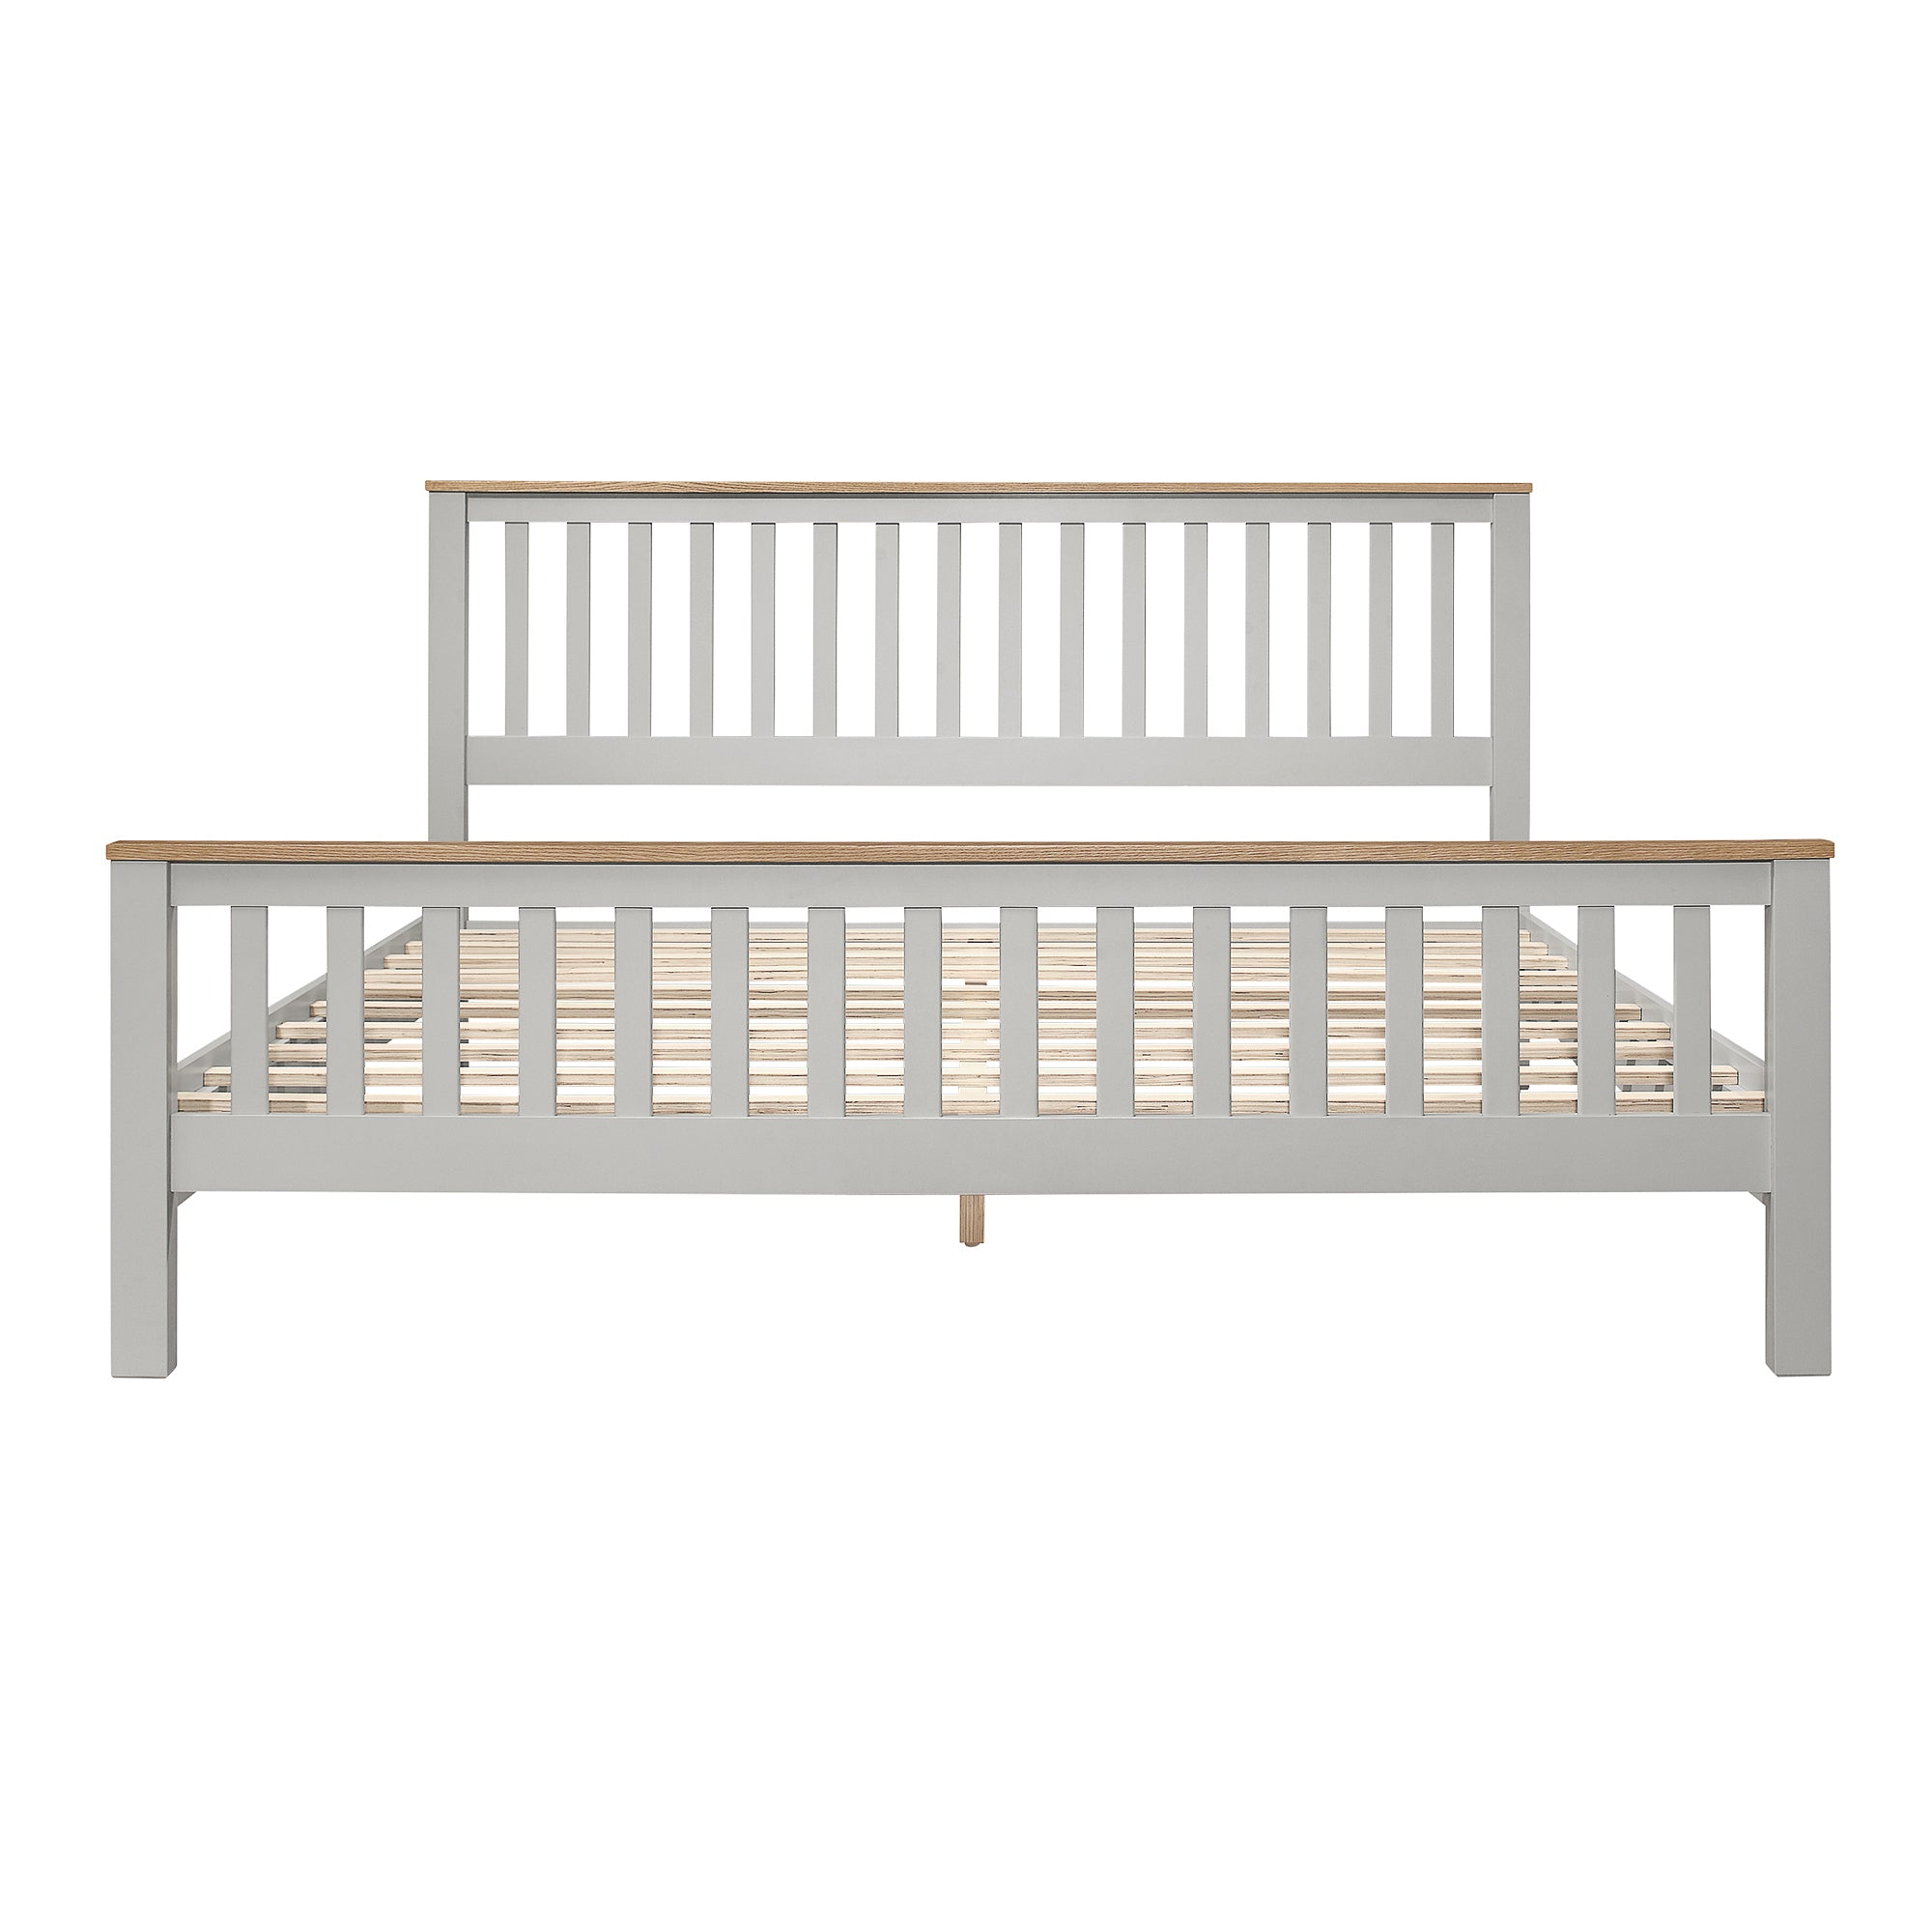 King Size Grey Platform Bed Frame with Oak Top By: Alabama Beds